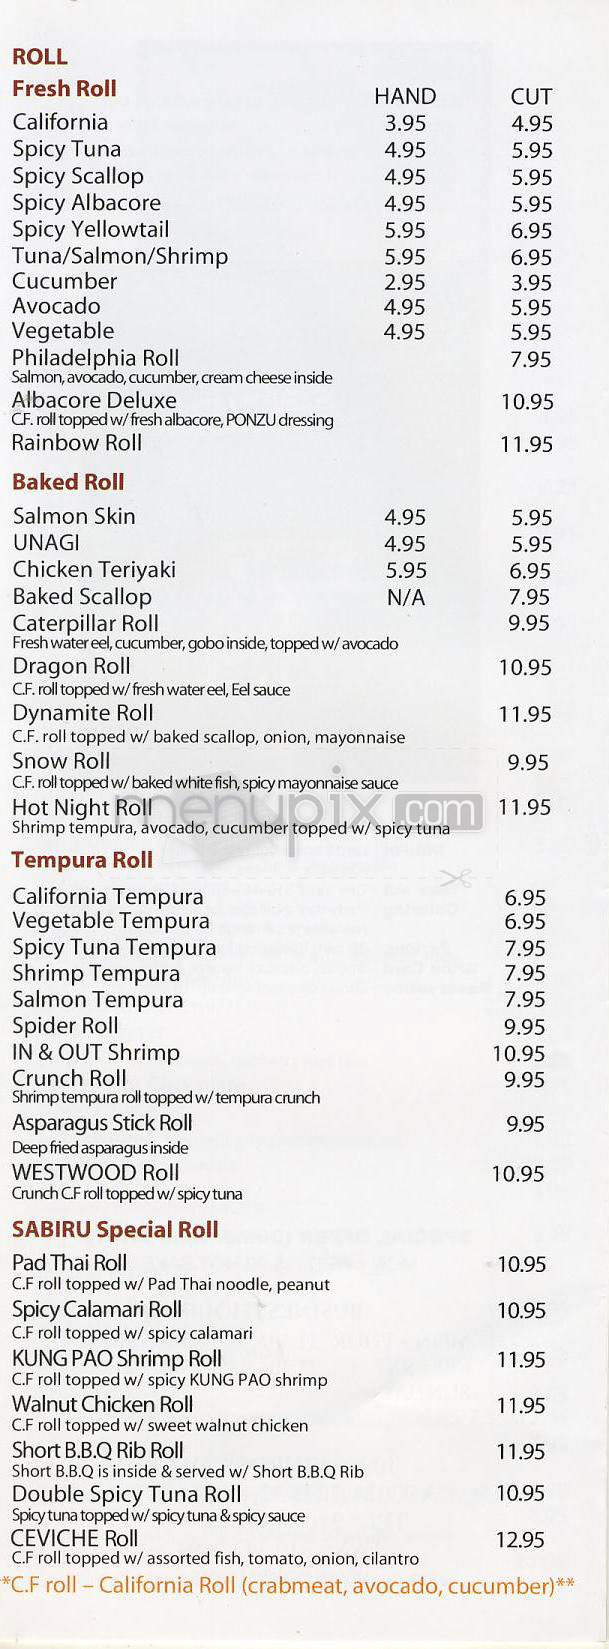 /201238/Sabiru-Sushi-and-Asian-Fusion-Los-Angeles-CA - Los Angeles, CA